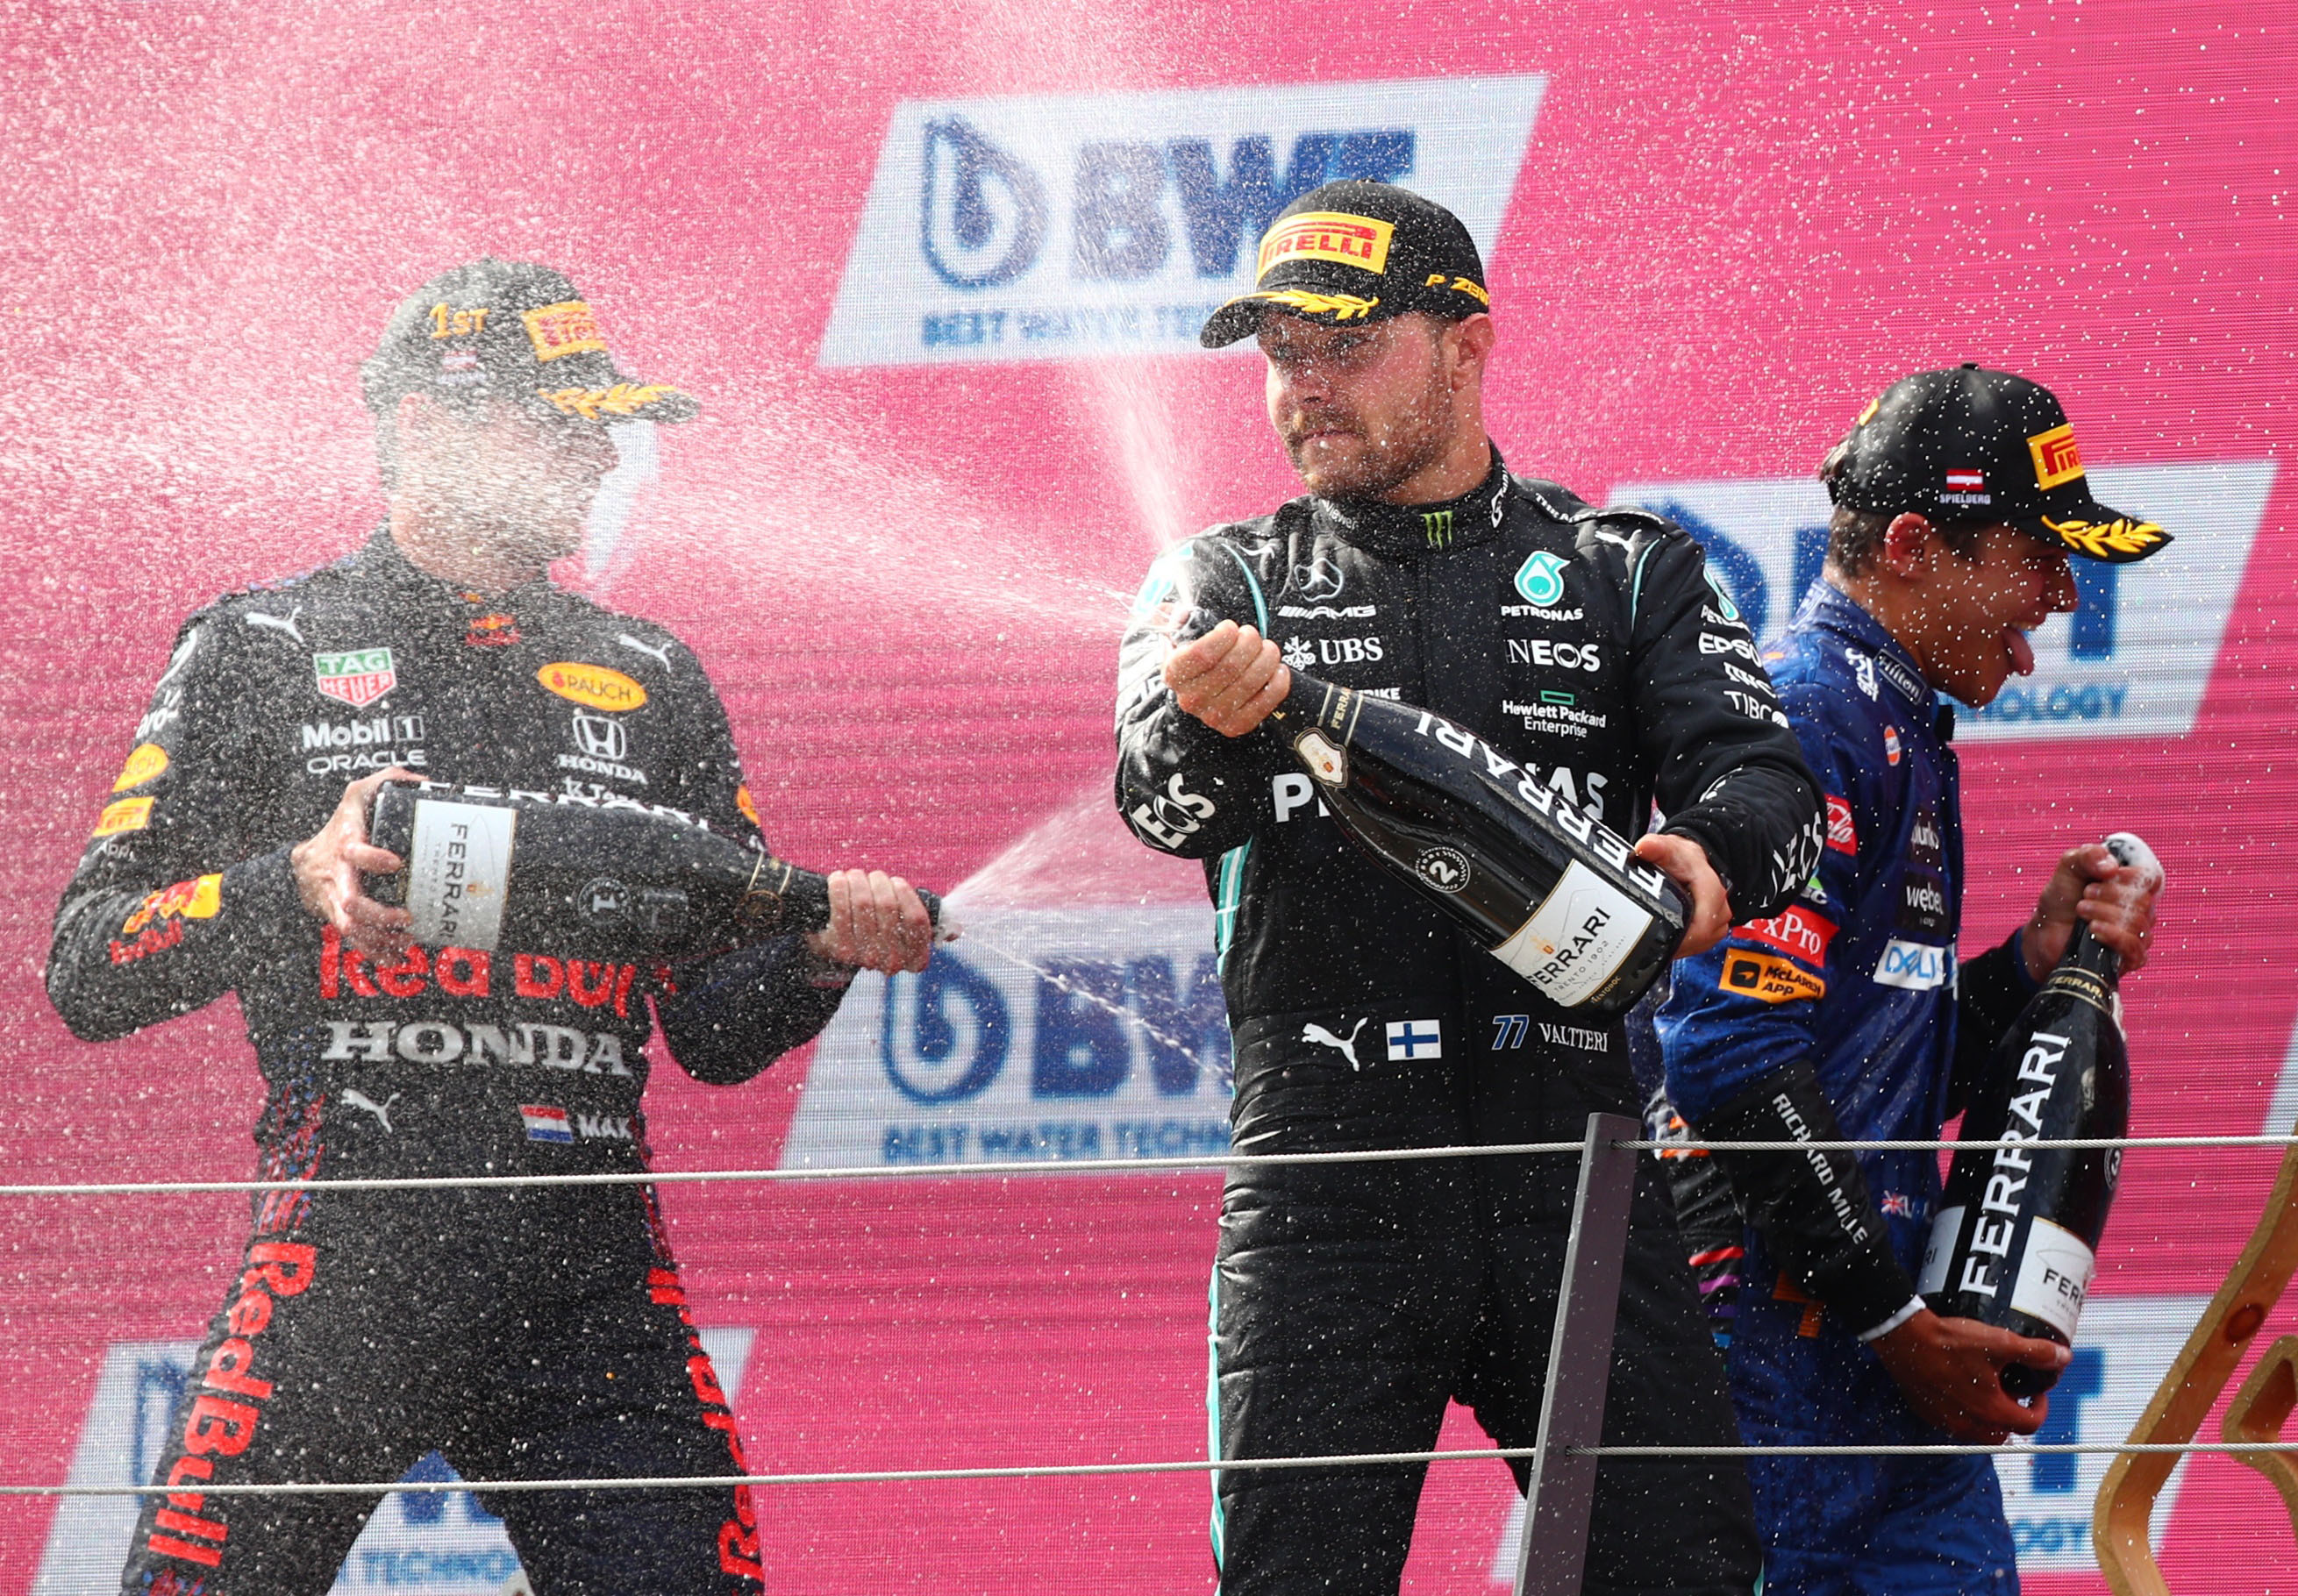 Festejo en el podio entre el ganador Max Verstappen, Valtteri Bottas (segundo) y Lando Norris (tercero) (REUTERS/Lisi Niesner)